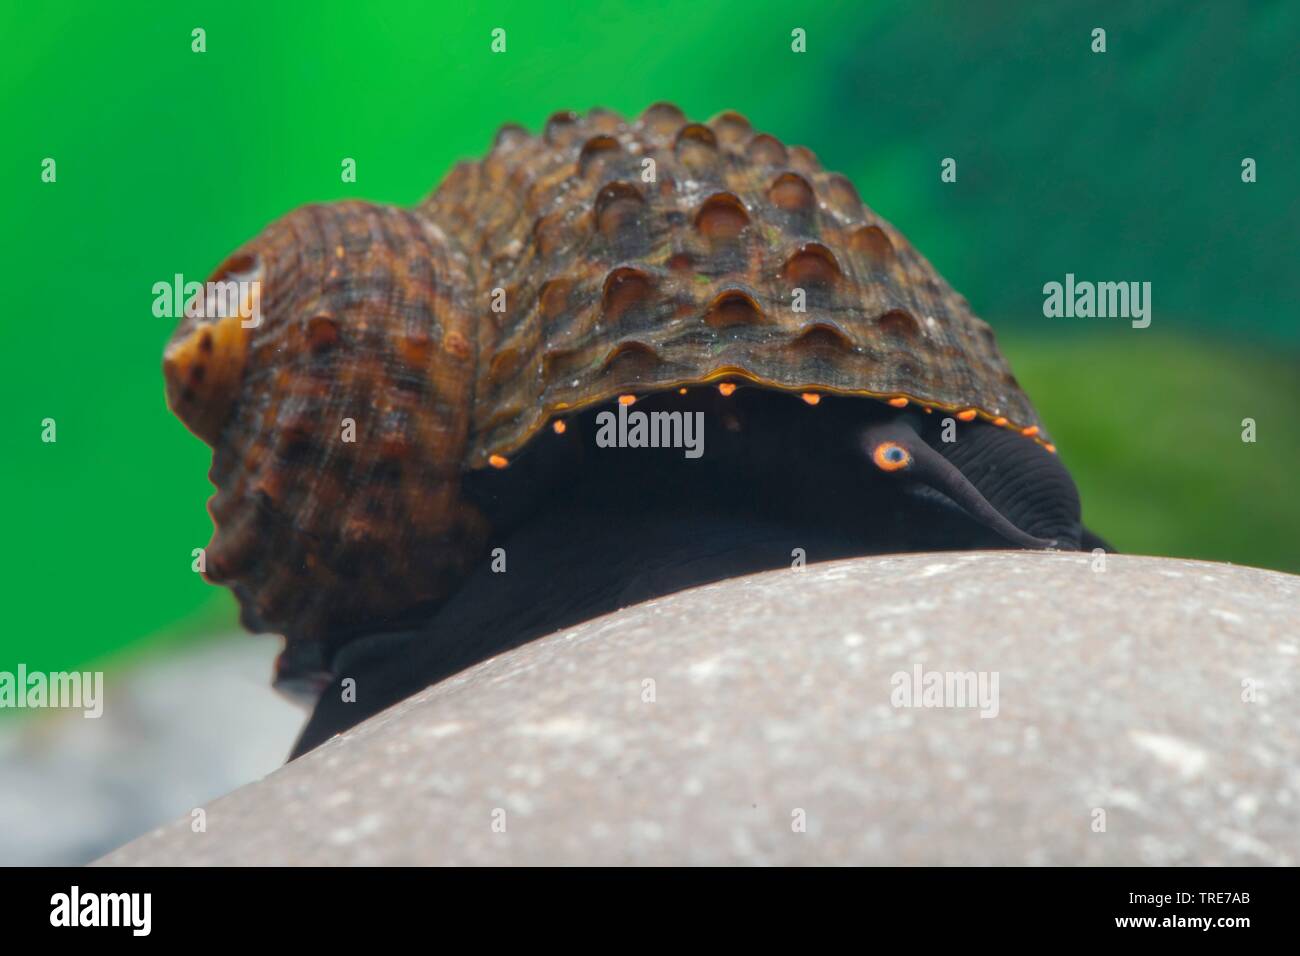 Bella Snail (Paludomus spec), in aquarium Stock Photo